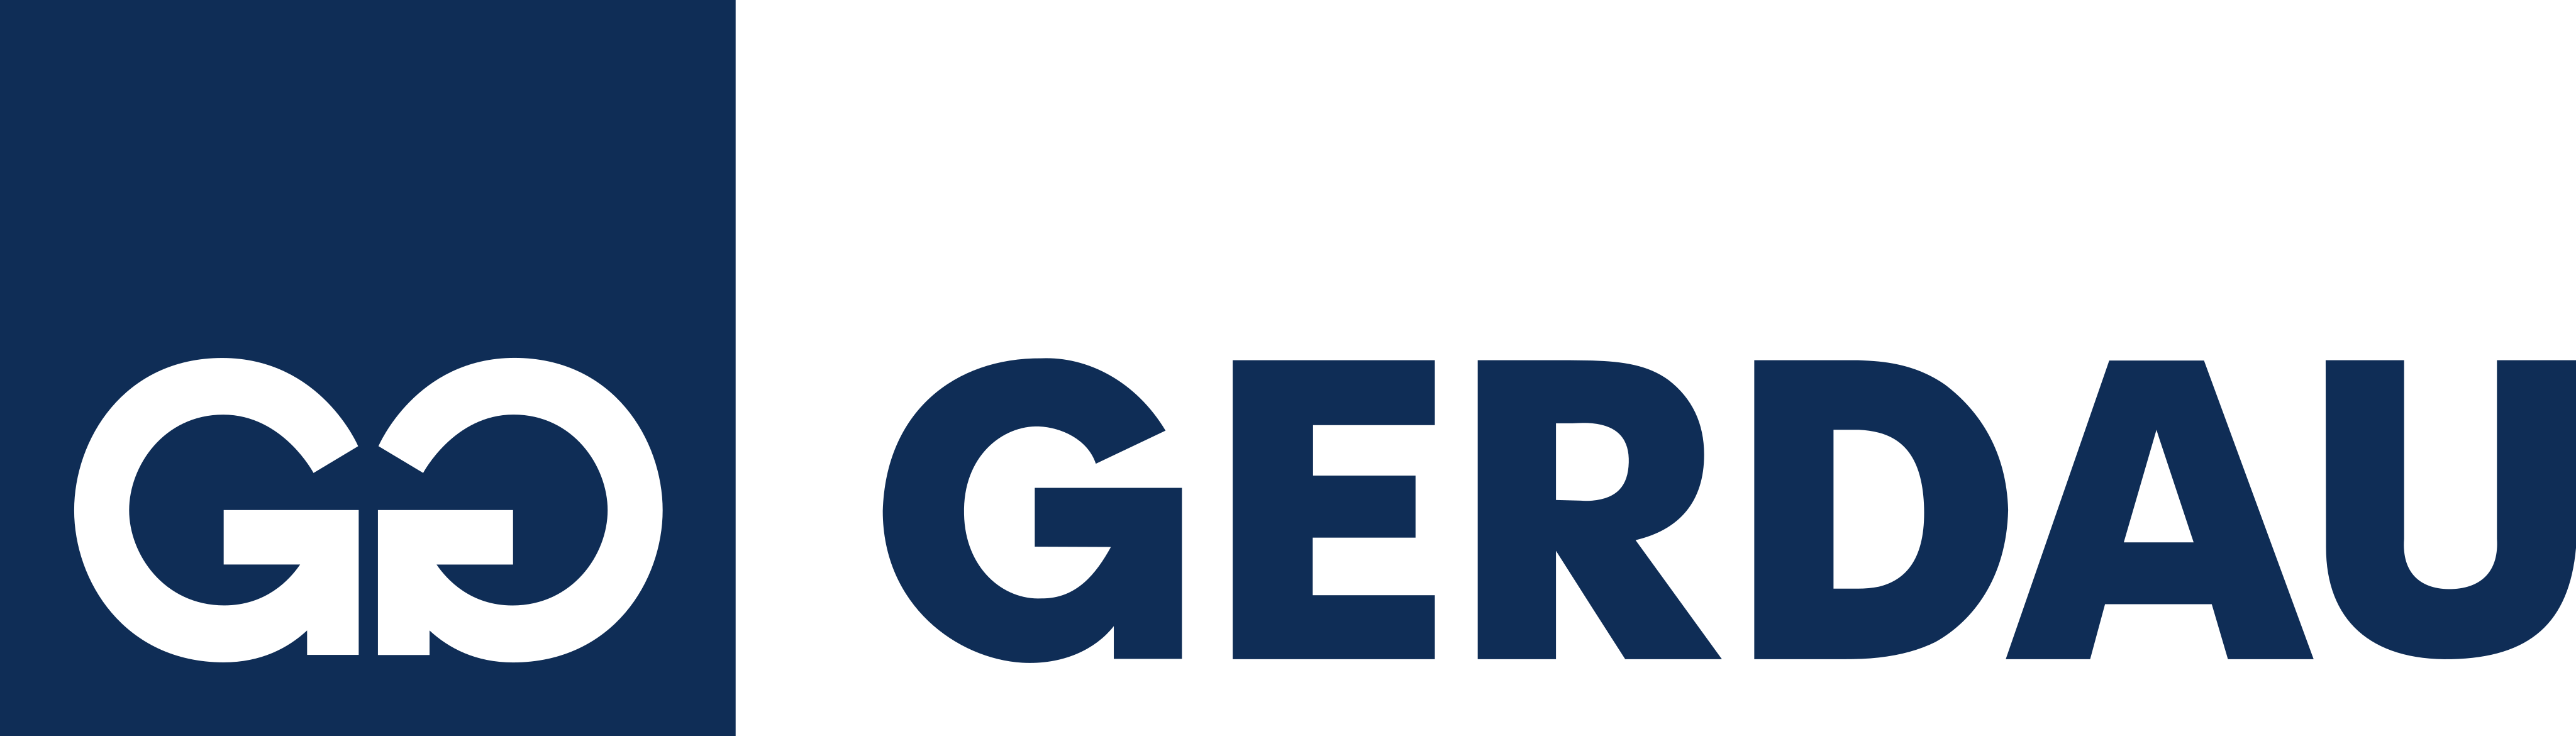 gerdau-logo